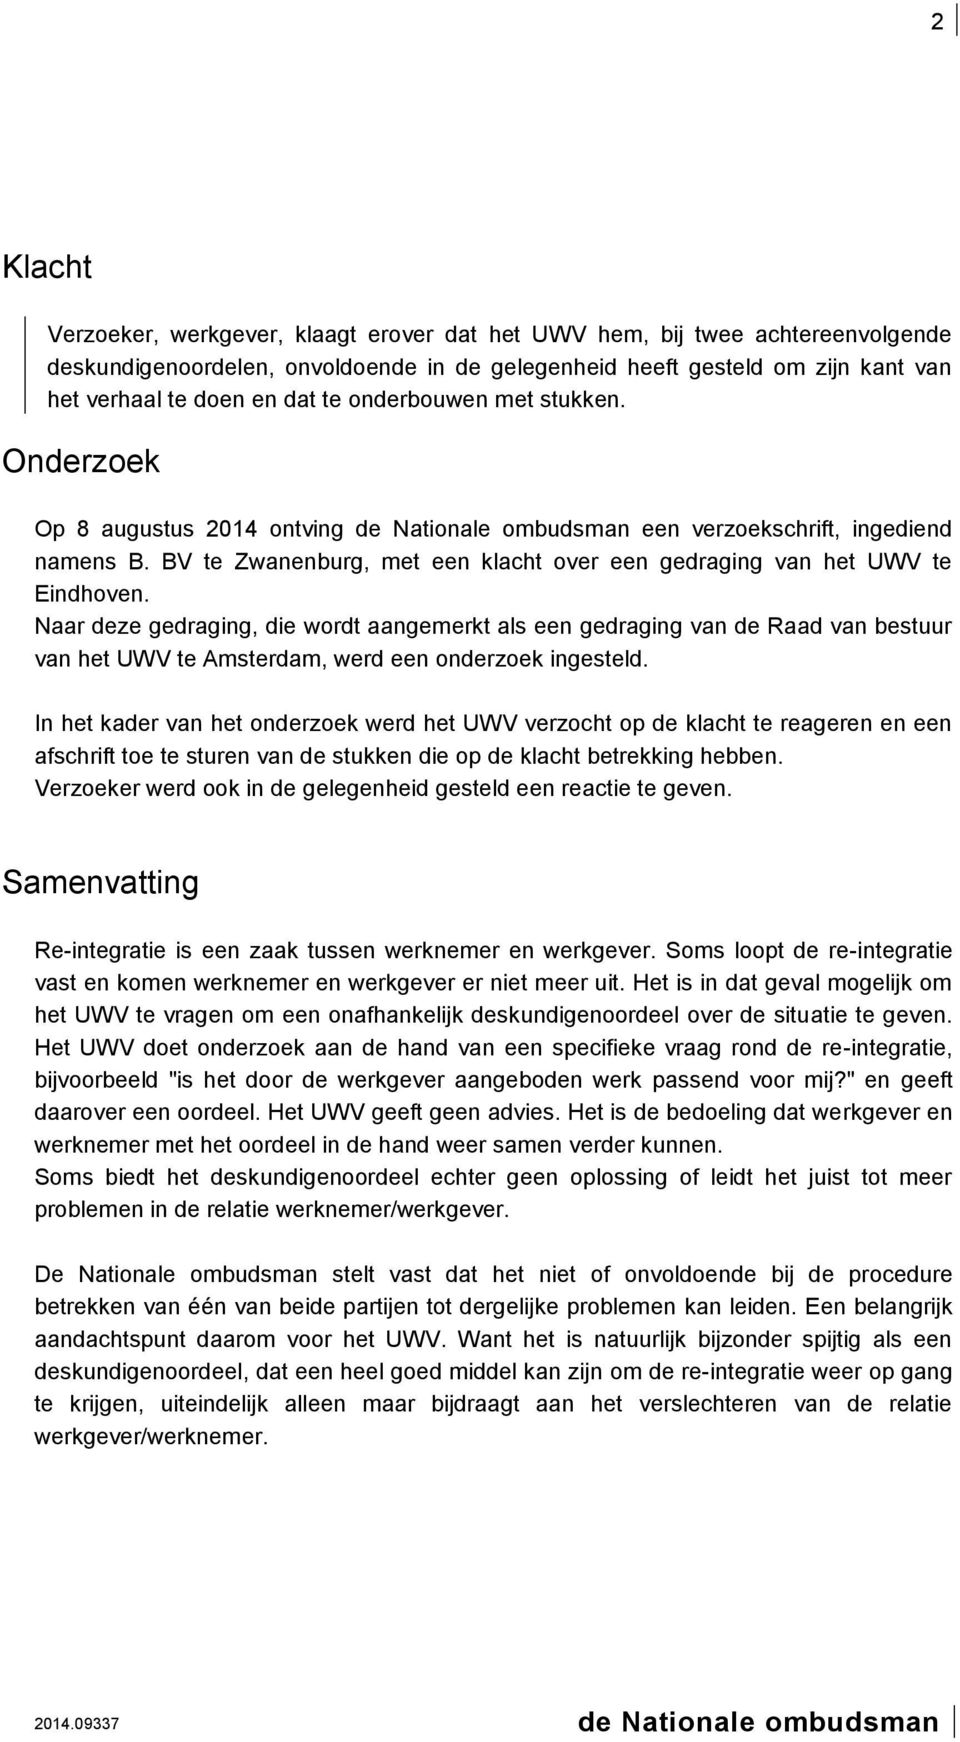 Naar deze gedraging, die wordt aangemerkt als een gedraging van de Raad van bestuur van het UWV te Amsterdam, werd een onderzoek ingesteld.